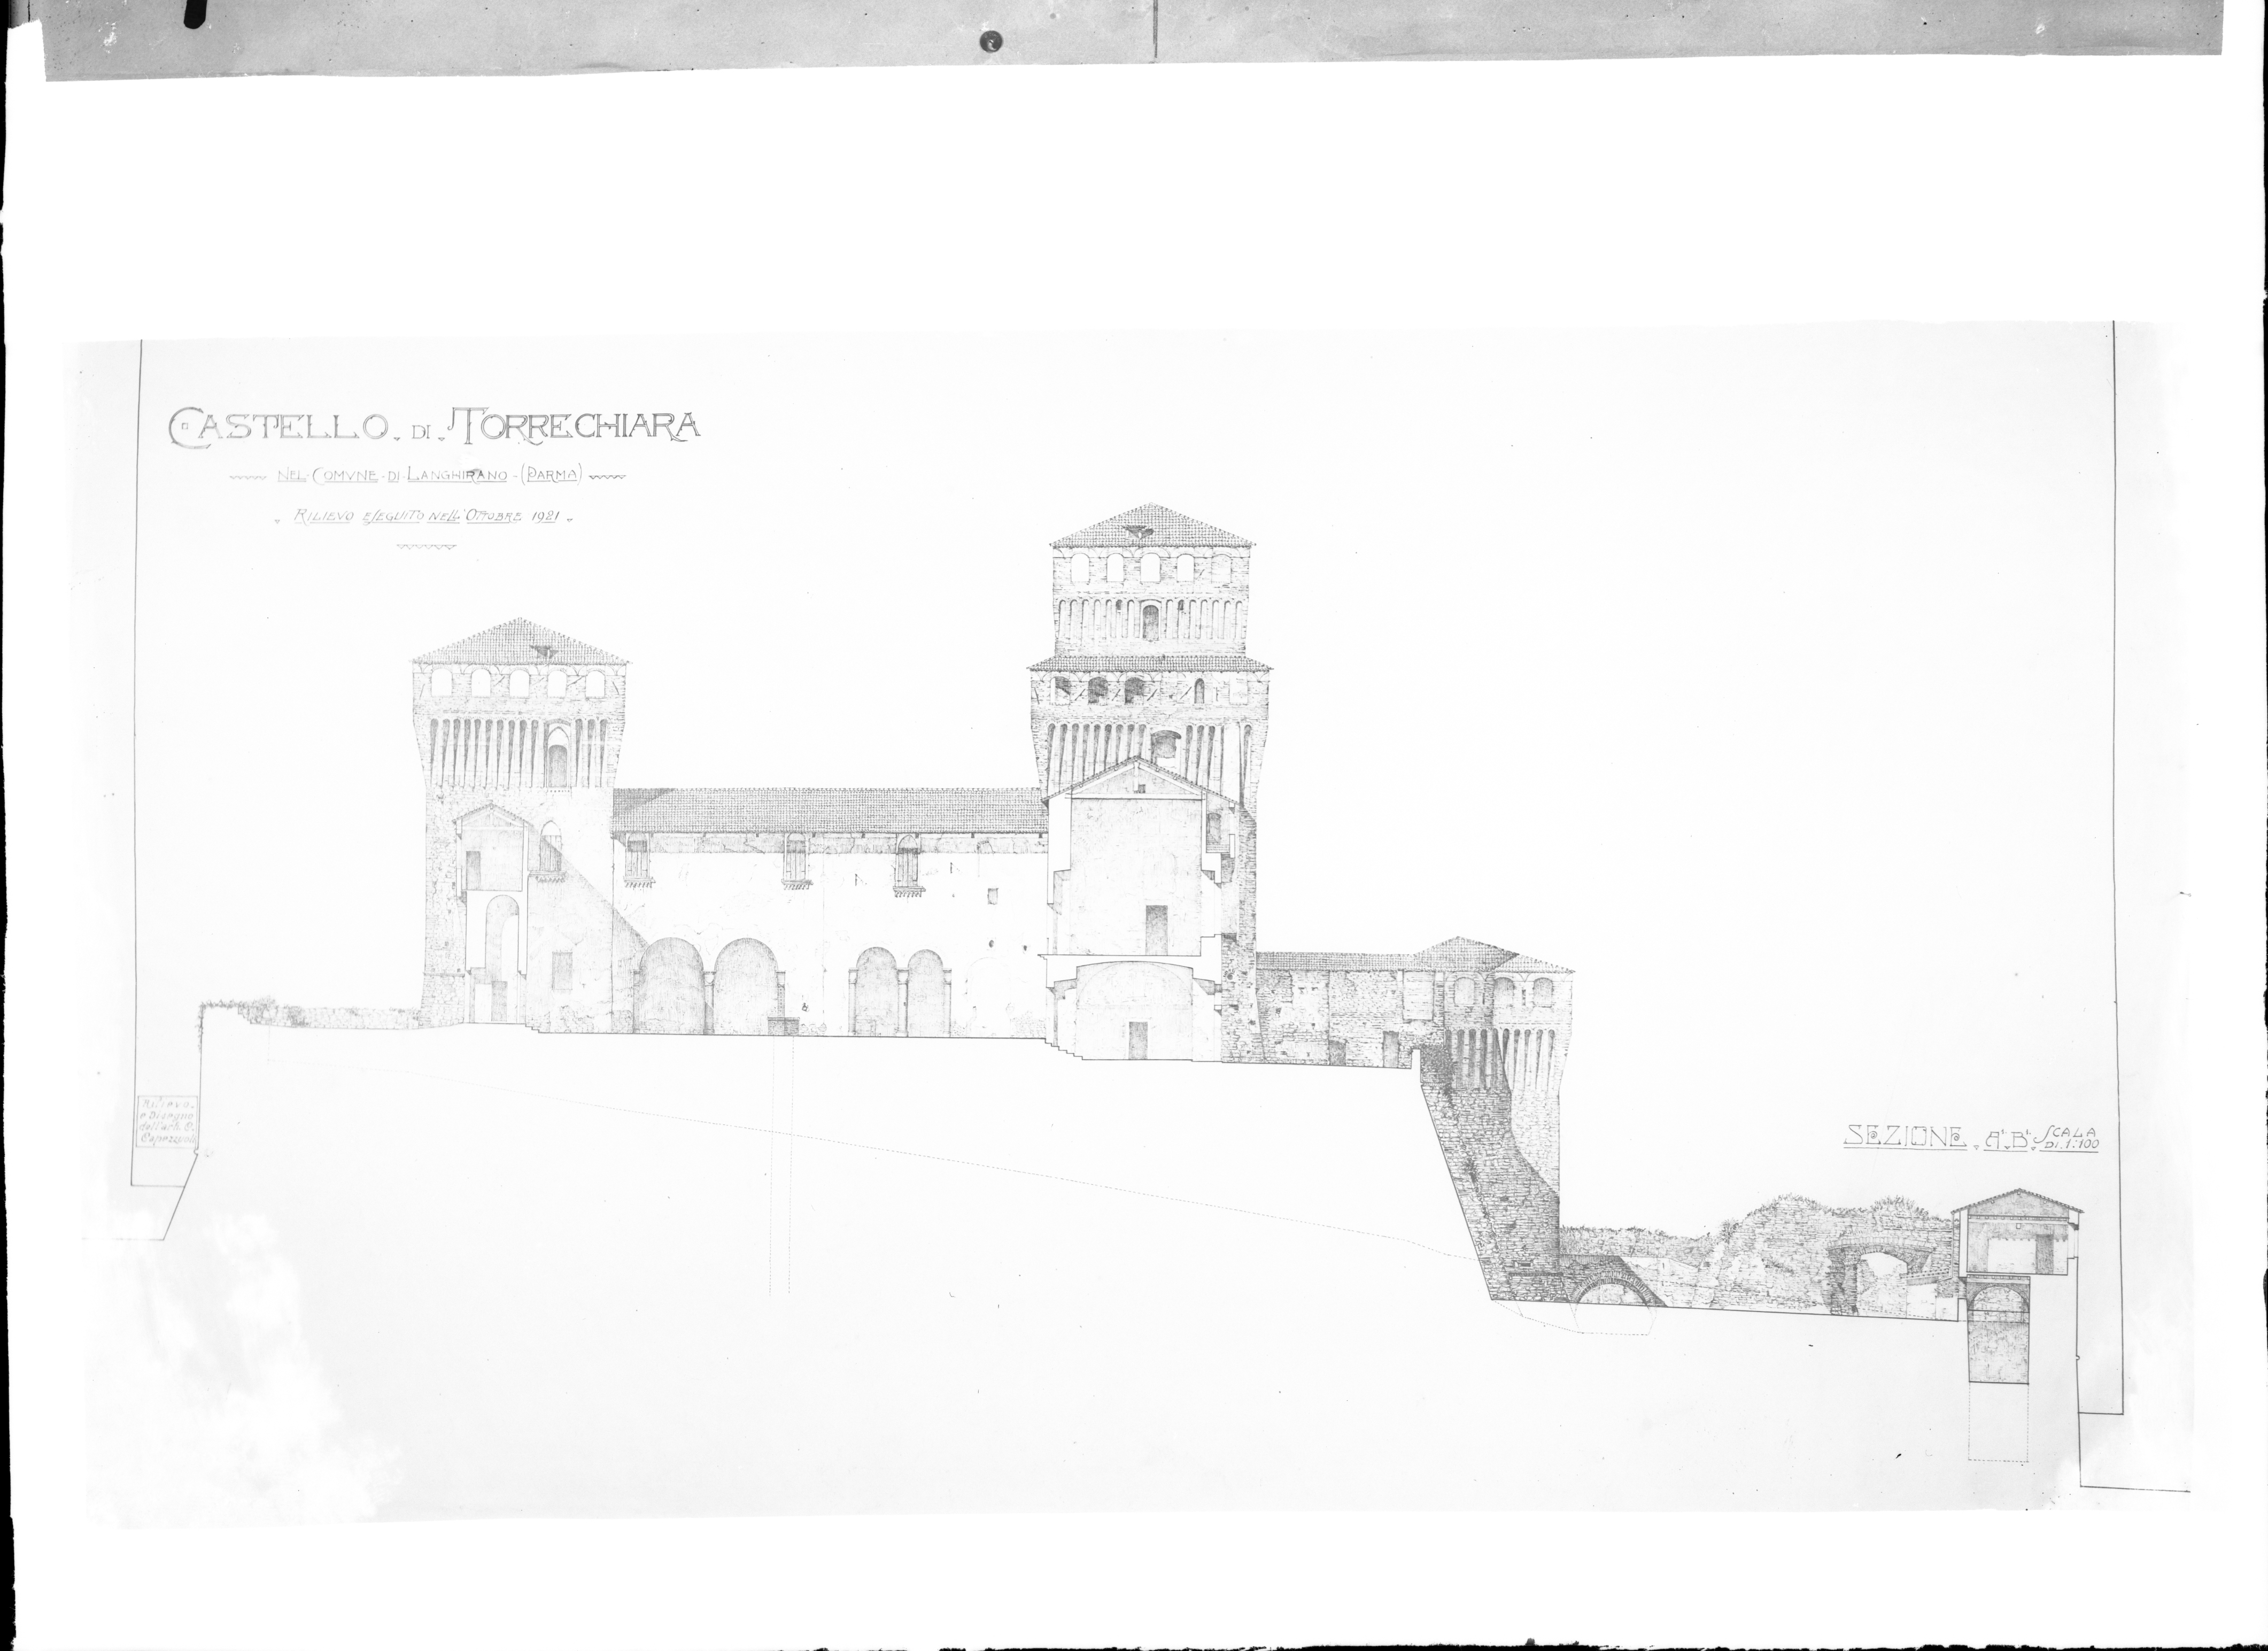 Italia - Emilia Romagna - Langhirano - Rilievo con sezione del castello di Torrechiara (negativo) di Stanzani, Arrigo (XX)